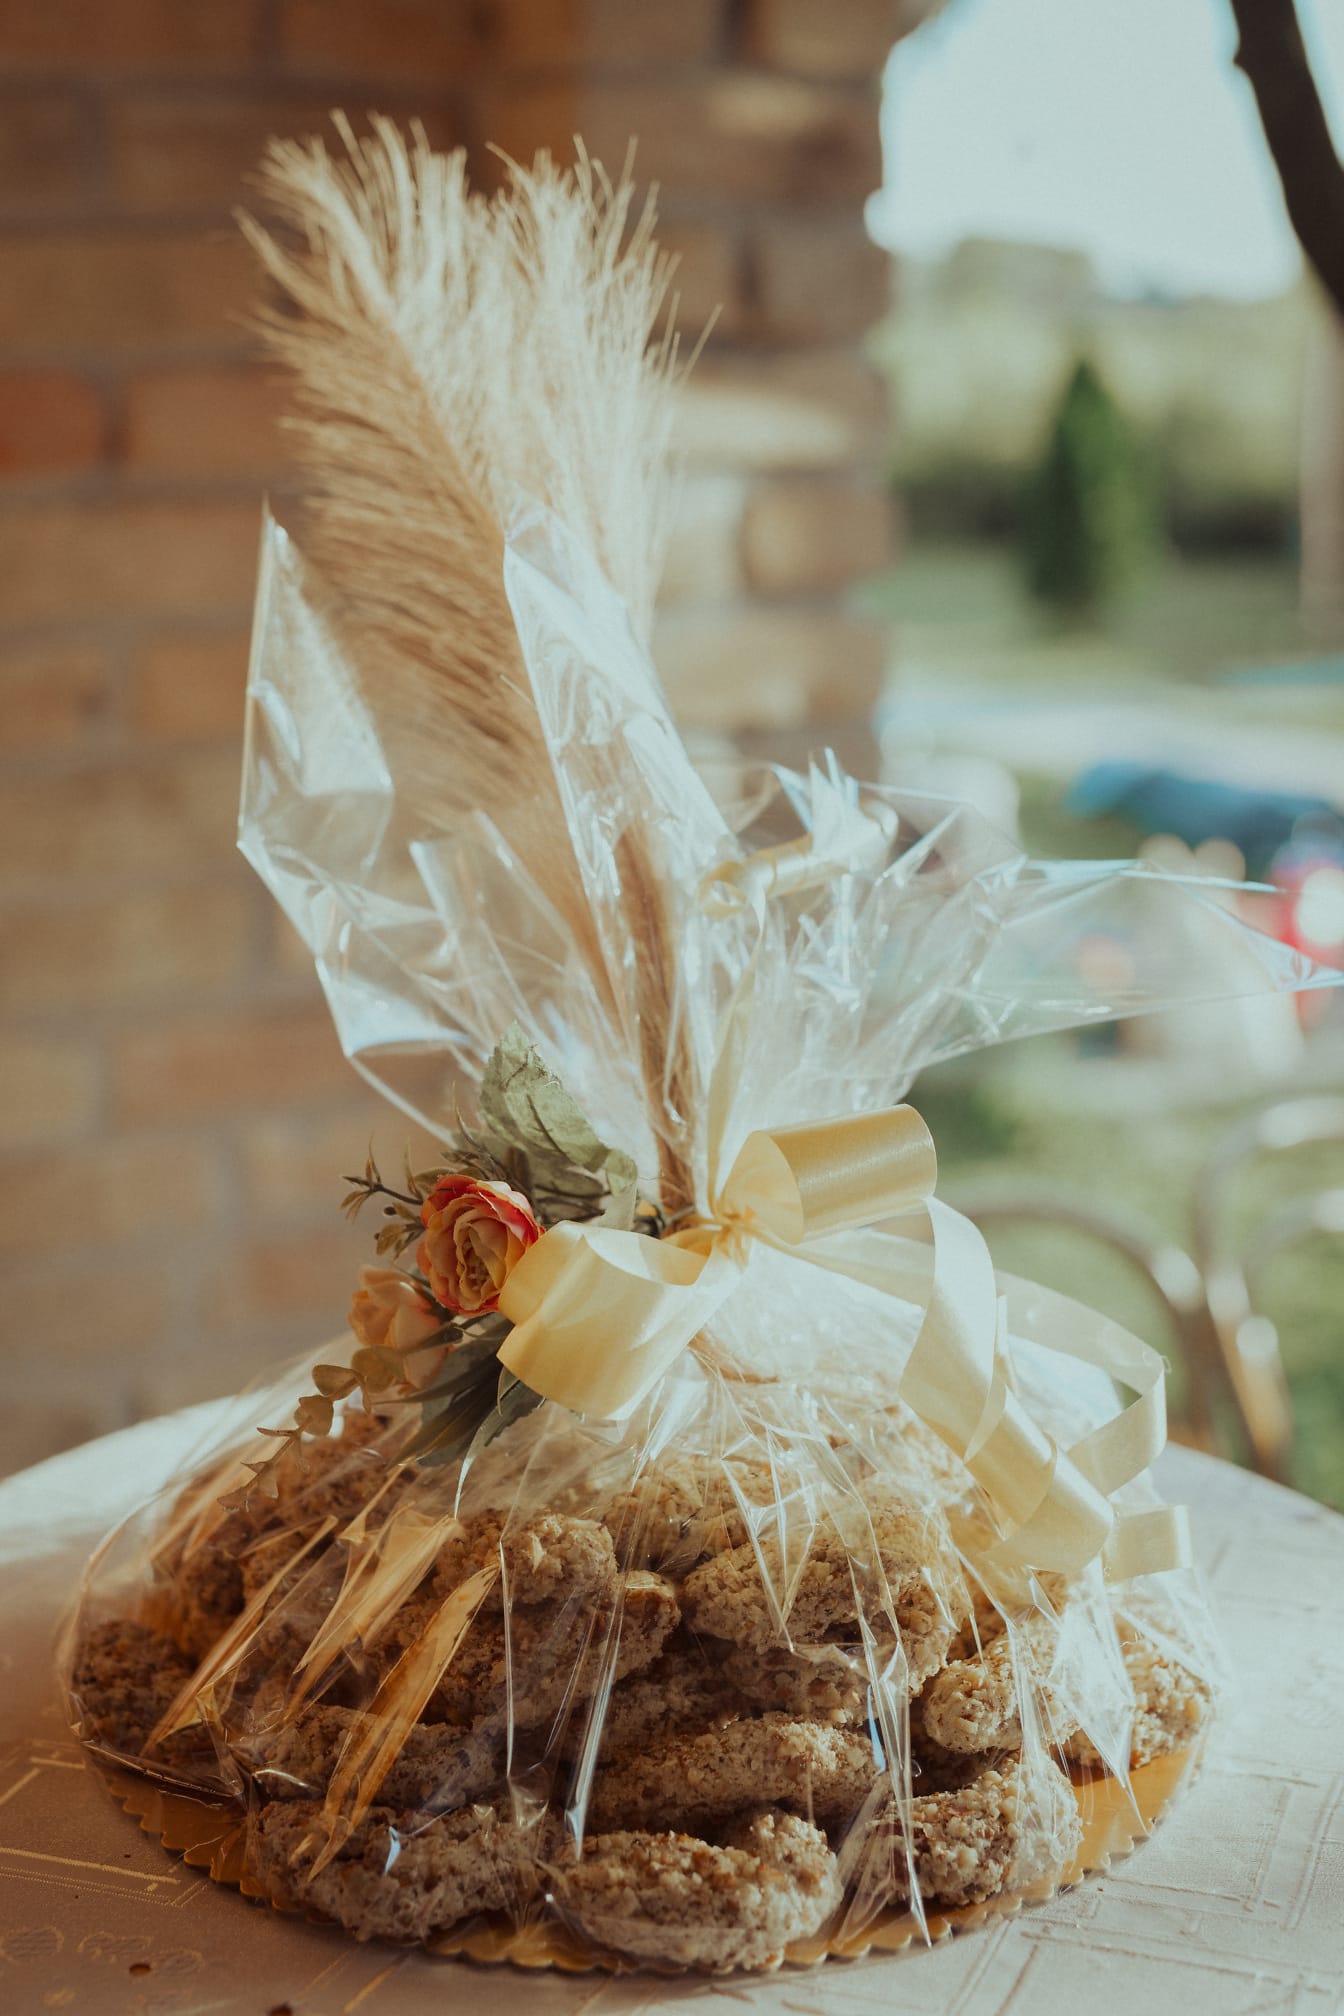 Ručne vyrábané sušienky v dekoratívnom rustikálnom balení na stole